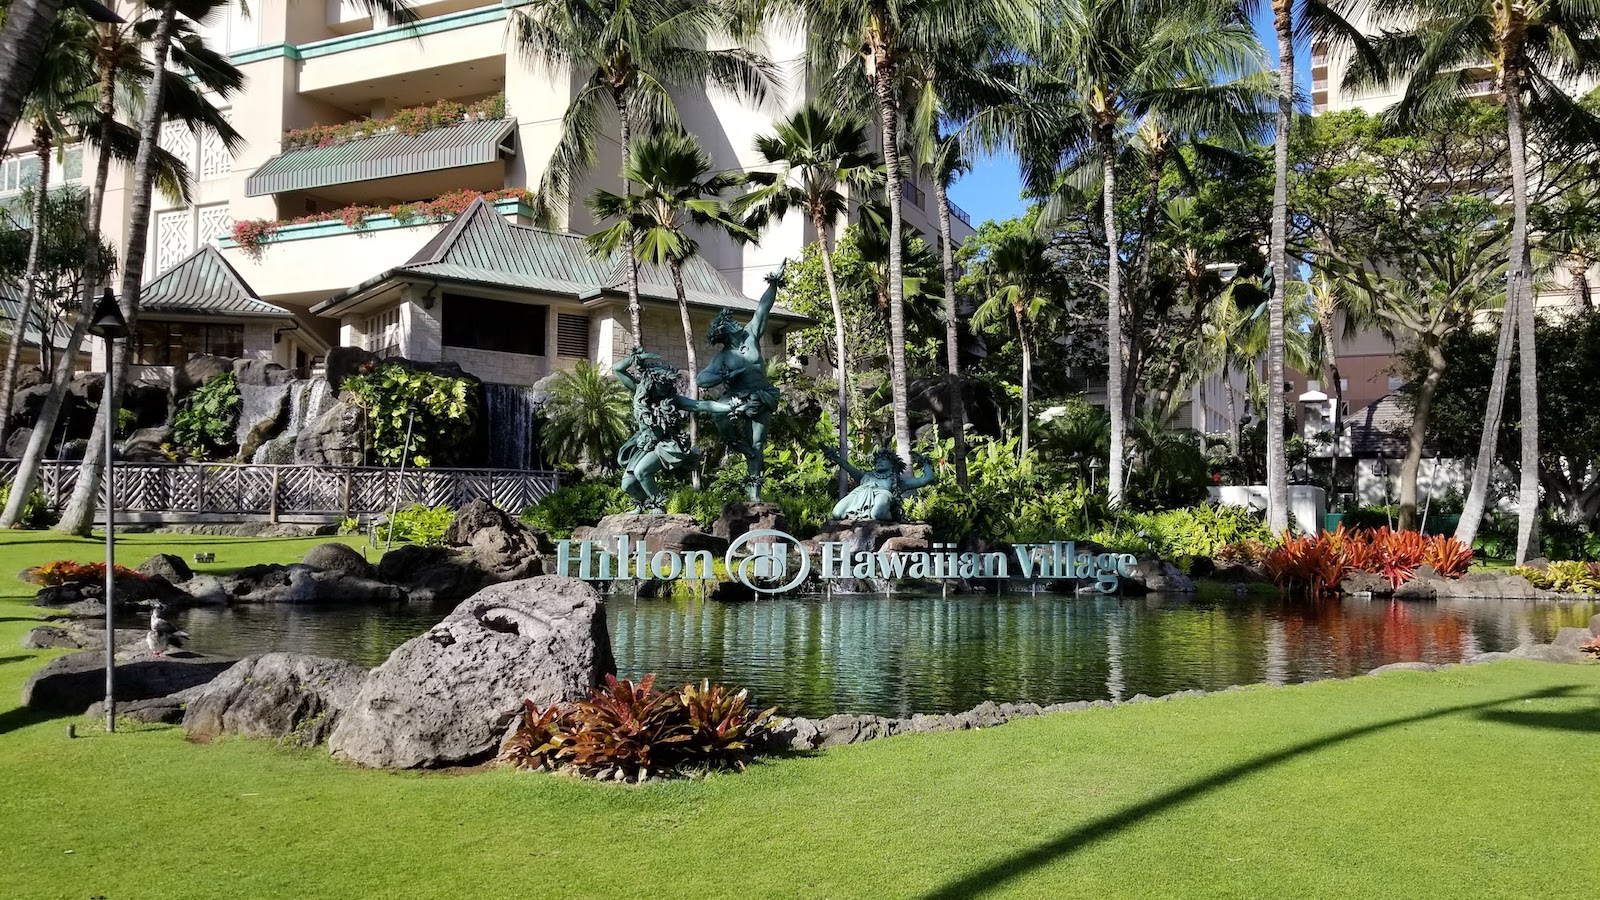 Hilton Hawaiian Village Waikiki Beach Resort - Our beachfront main